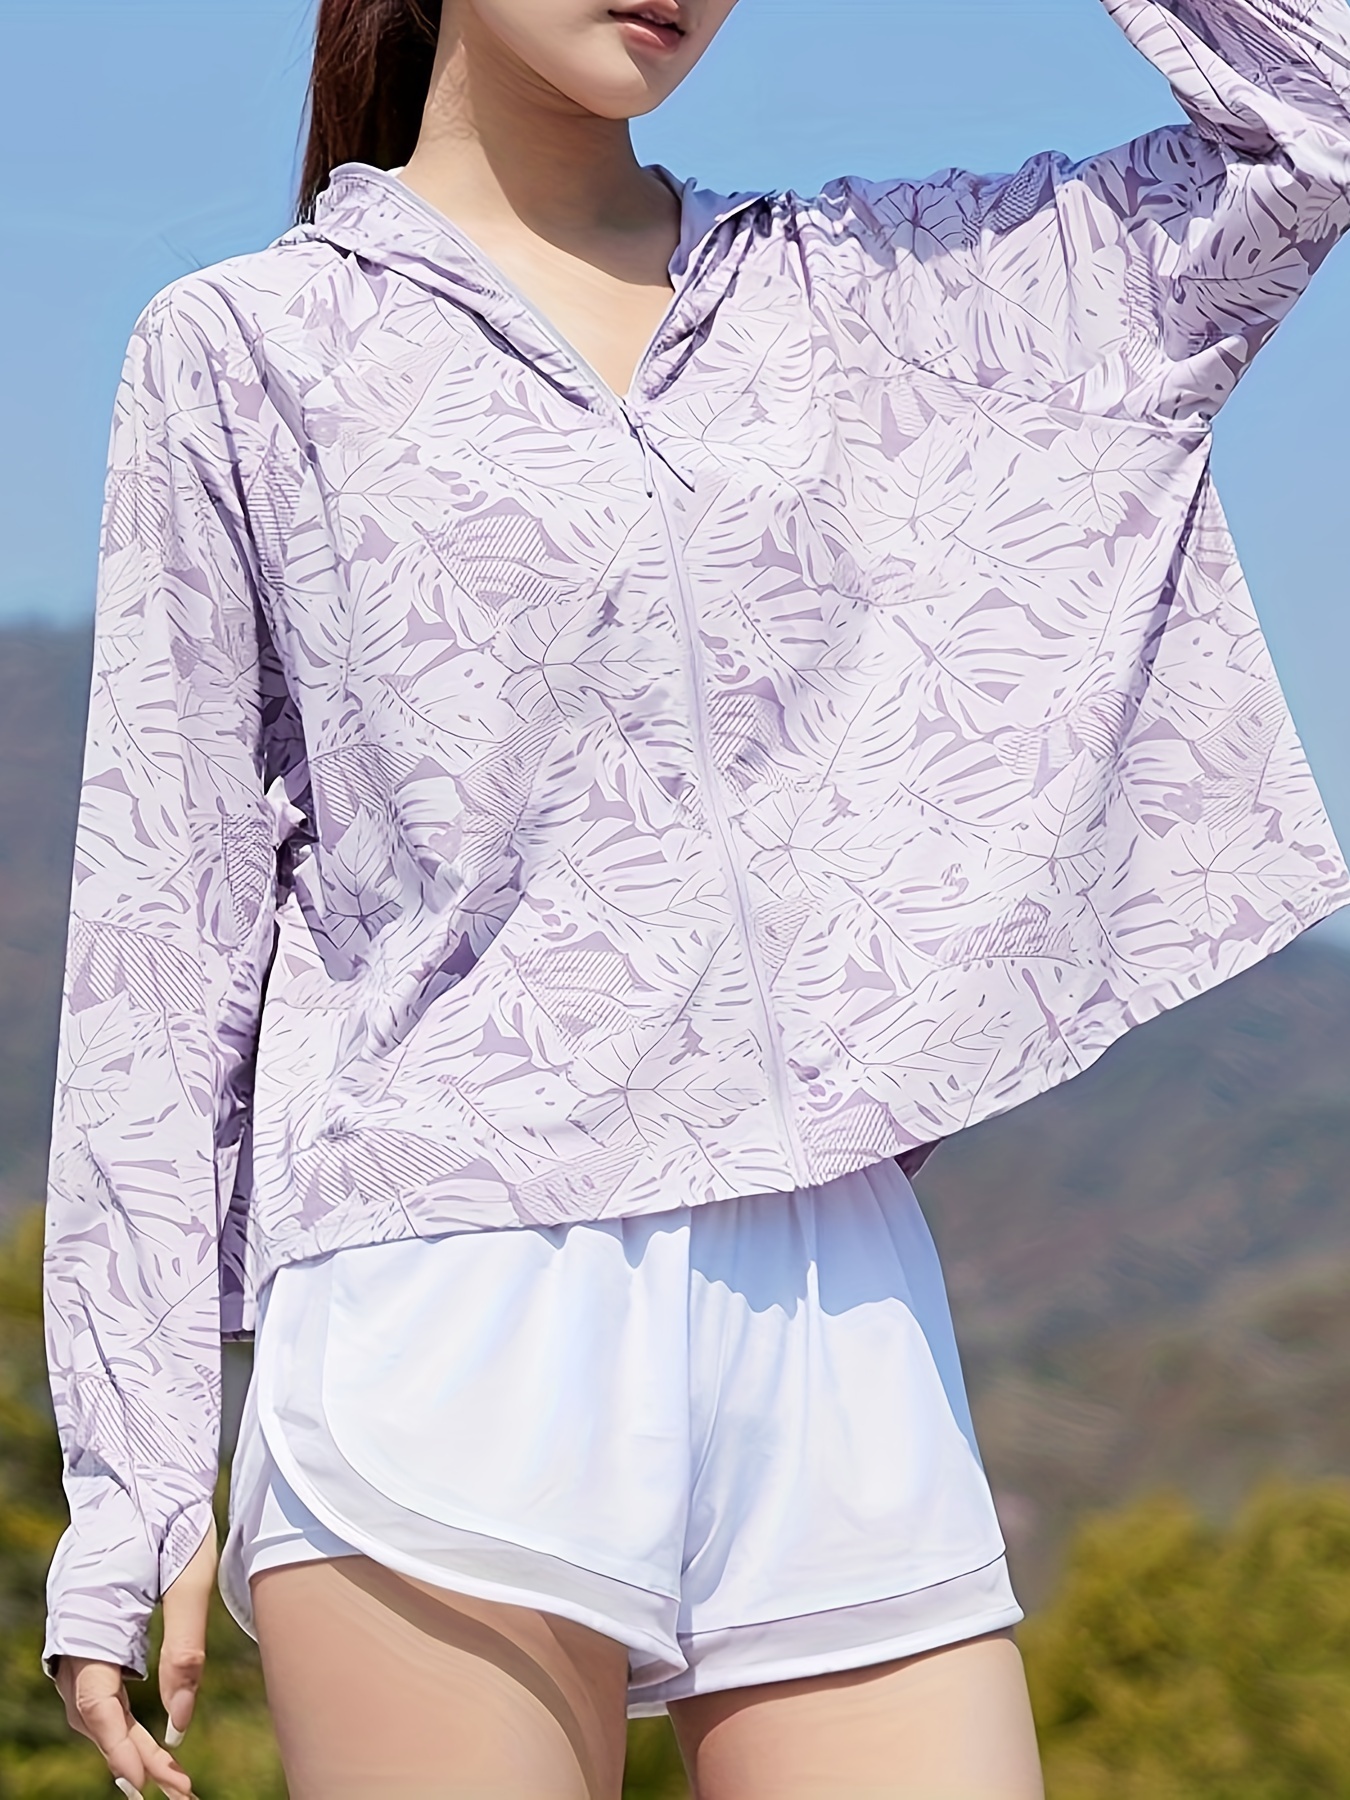 Mujer Upf 50+ Protección Solar Manga Larga Camiseta Deportiva Aire Libre,  Top Atlético, Ropa Protección Solar Manga Larga Color Sólido Cuello Redondo, Envío Gratuito Nuevos Usuarios